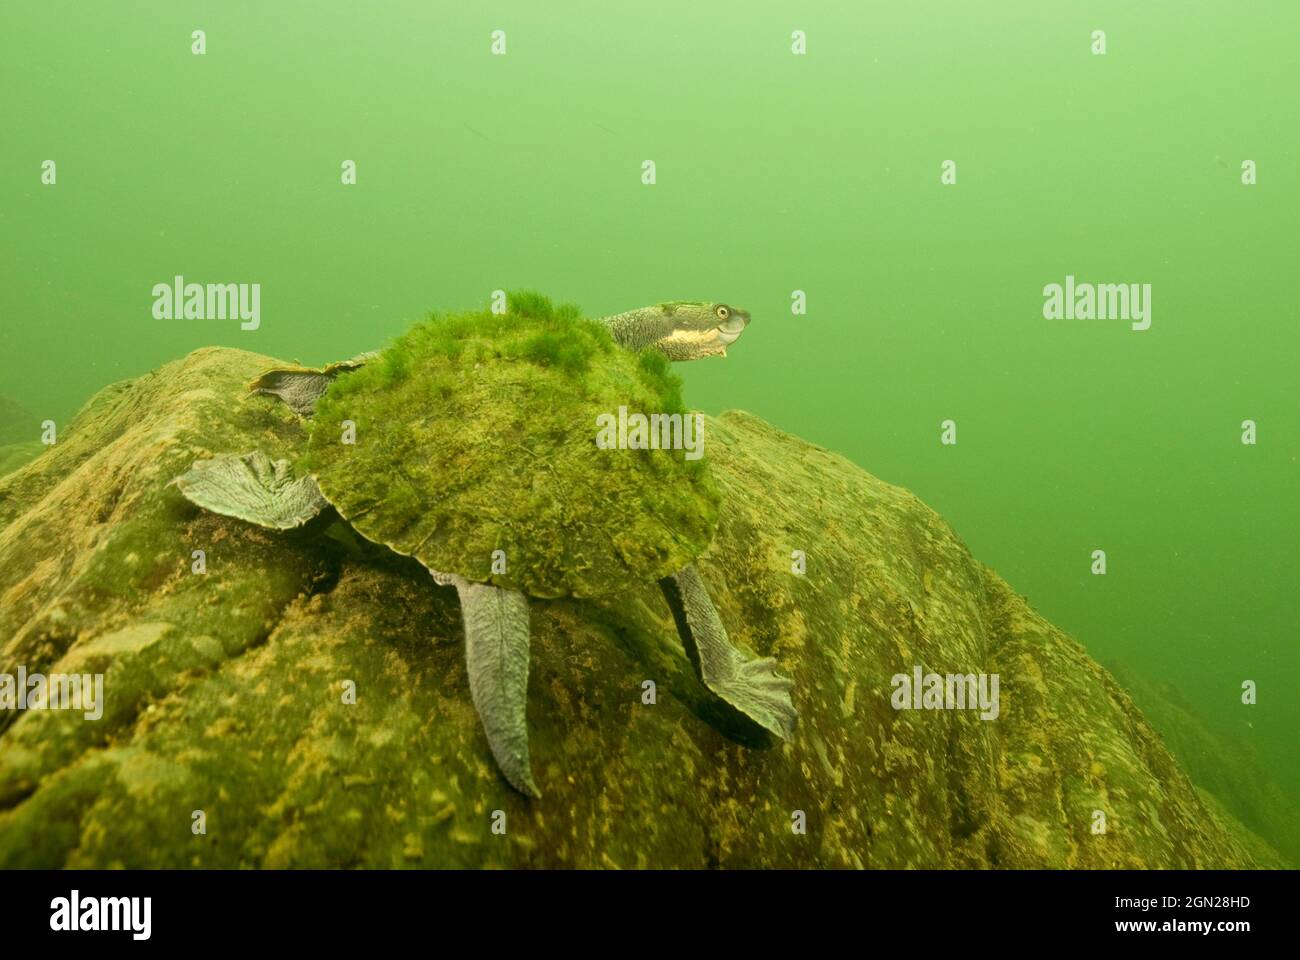 La tortue serpentine de la rivière Bellinger (Elseya georgesi), les recherches sur la rivière Bellinger depuis plus de 20 ans ont localisé l'espèce dans seulement quatre sites. Le popu Banque D'Images